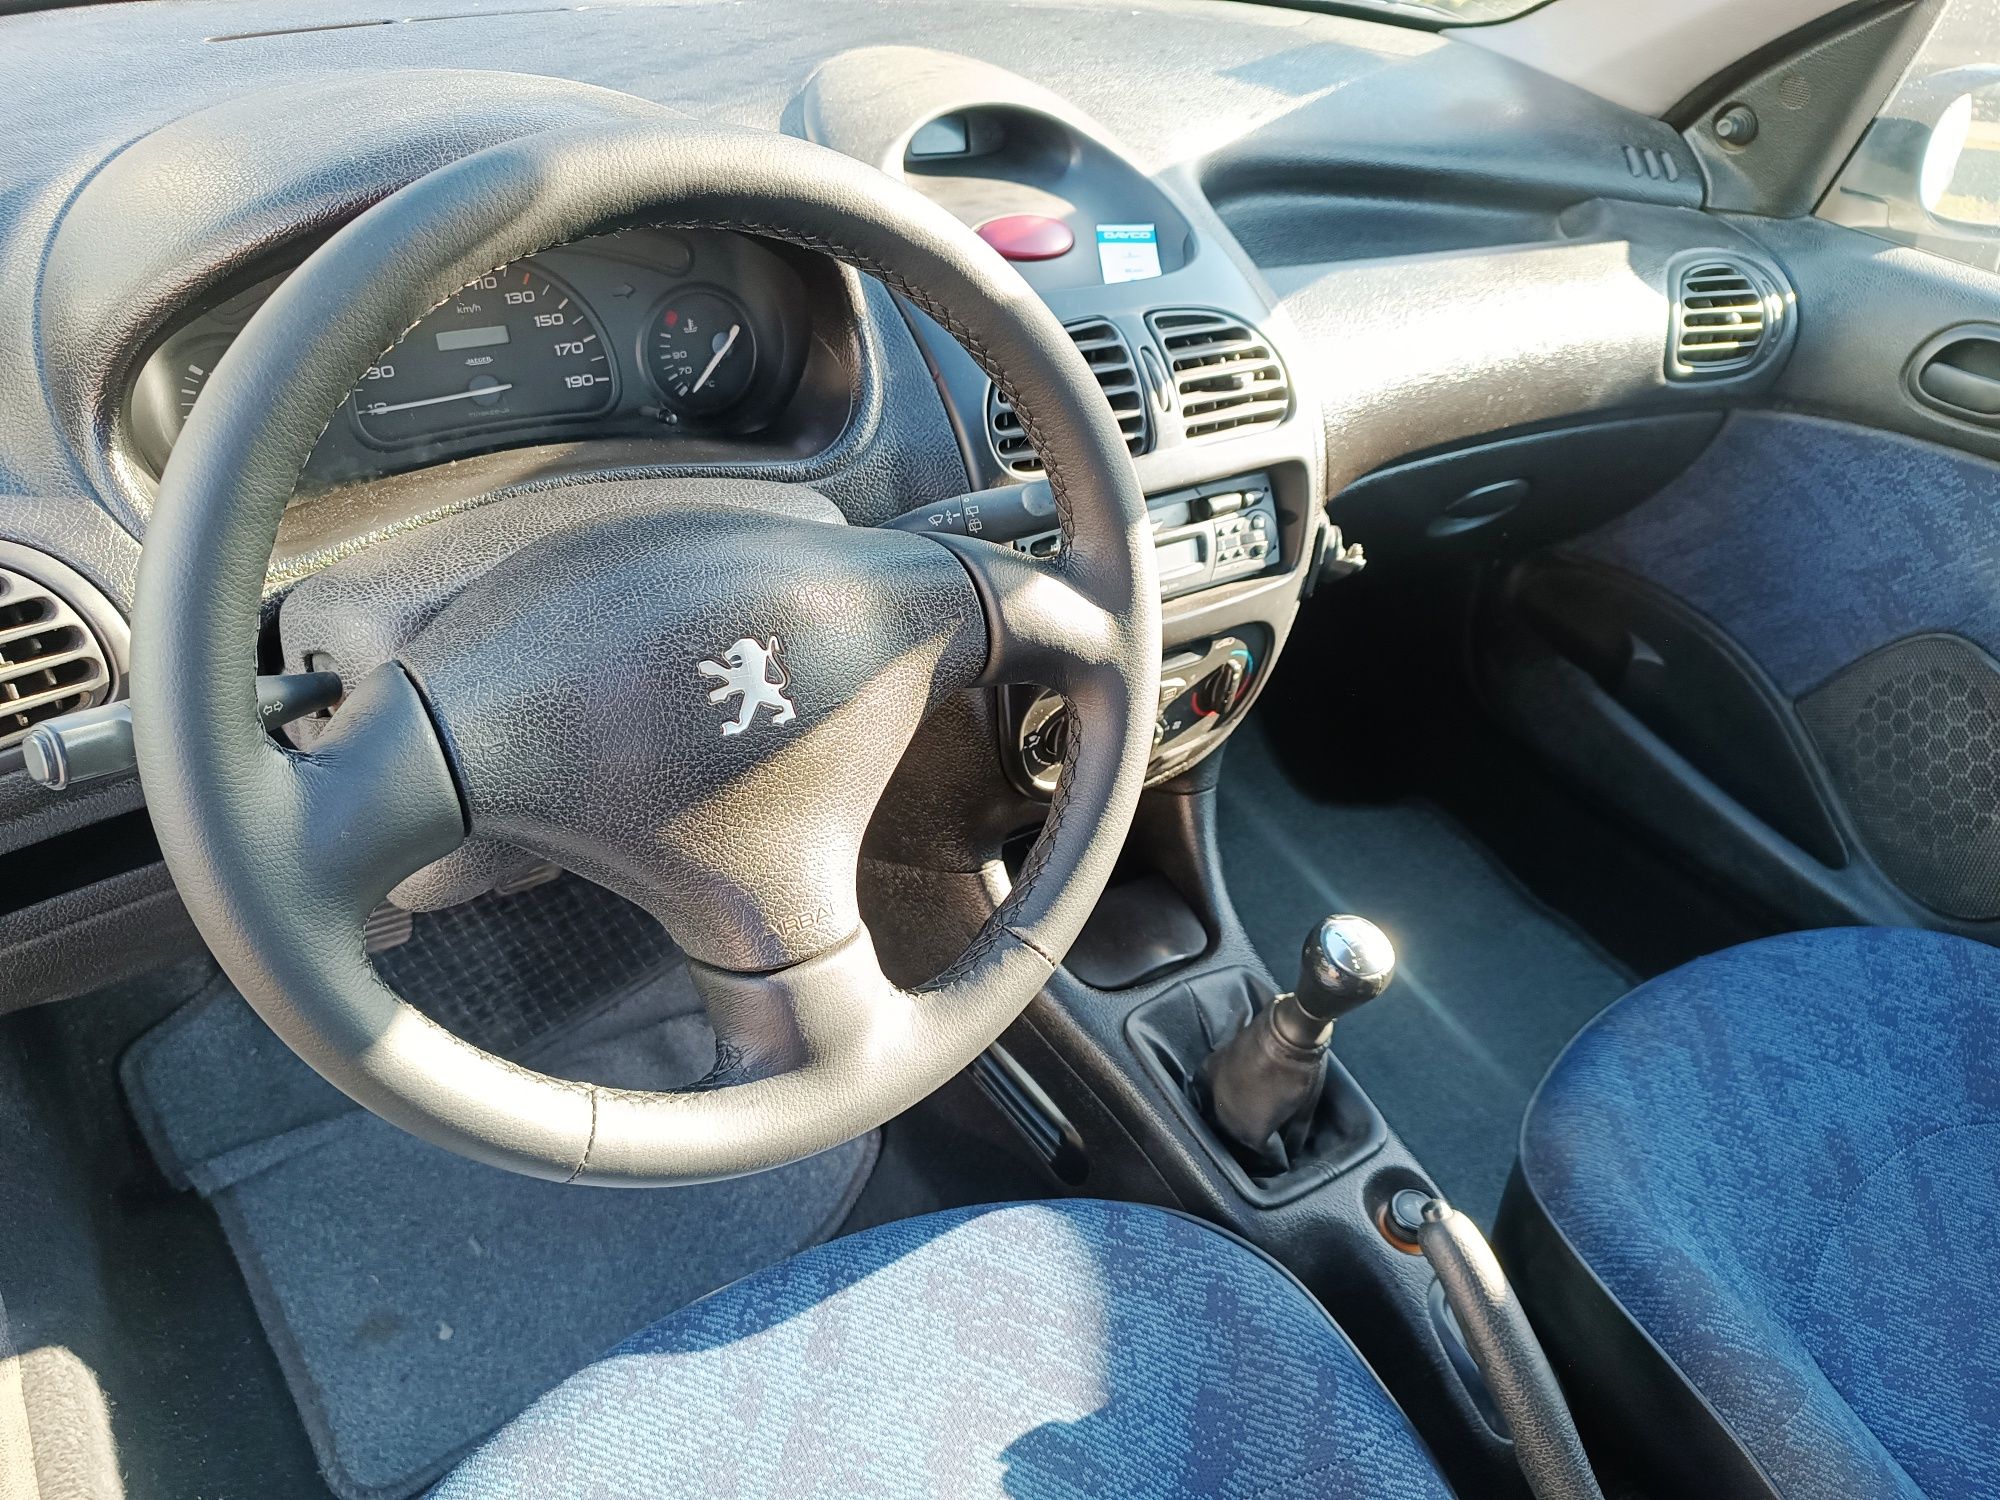 Peugeot 206 1.9D (ler descrição sff)